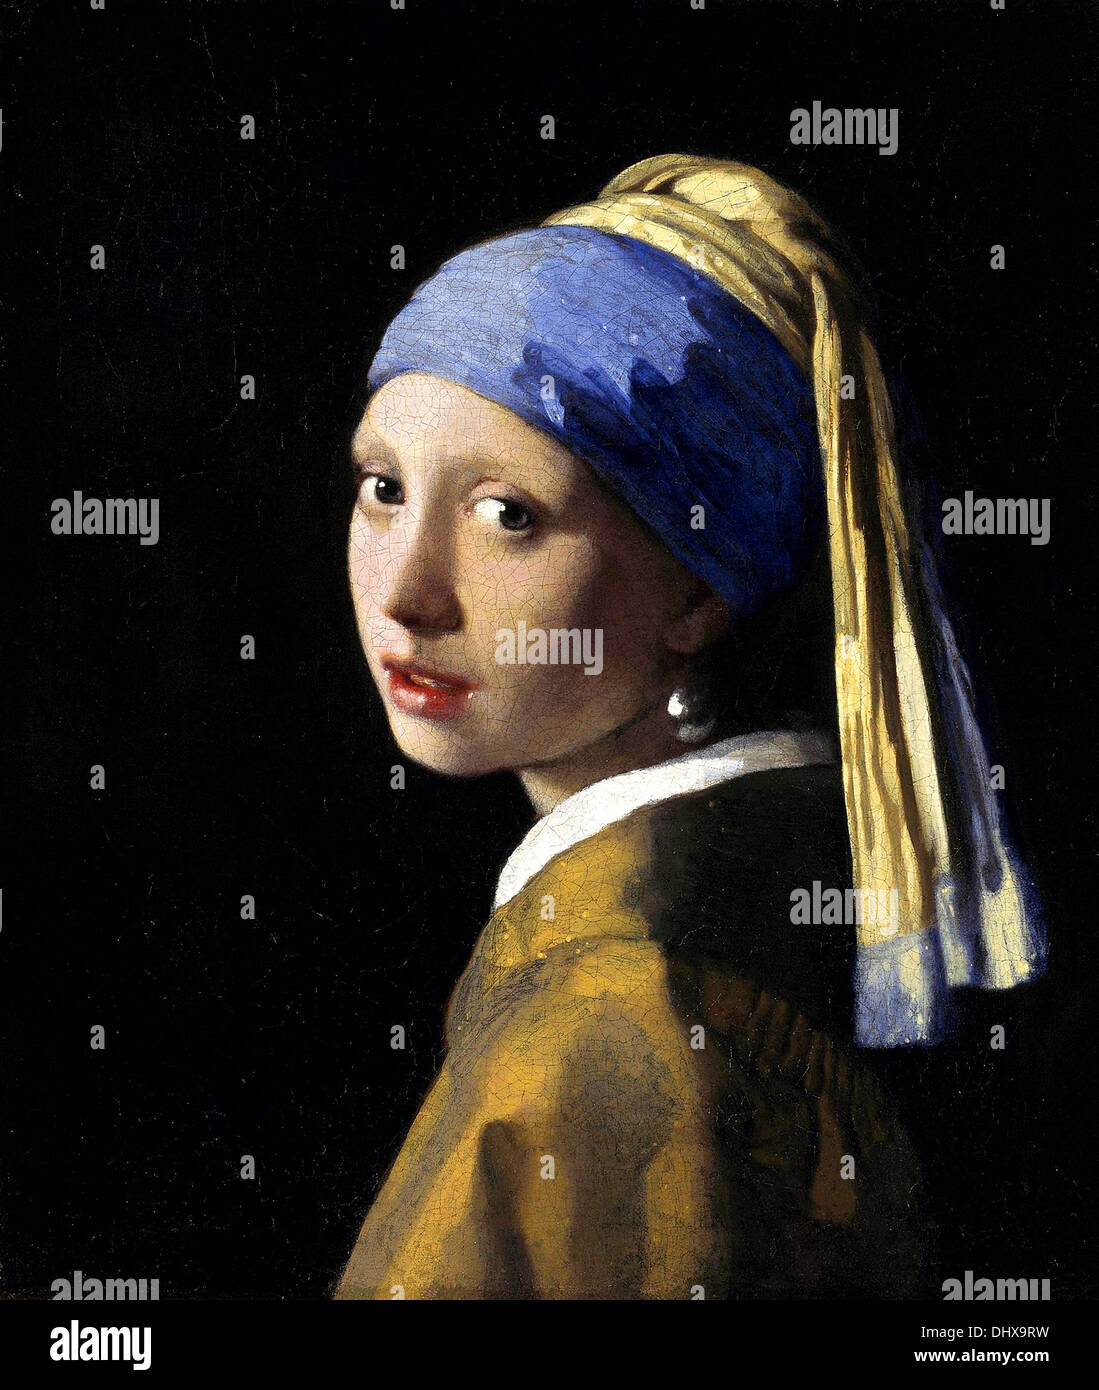 Johannes vermeer immagini e fotografie stock ad alta risoluzione - Alamy